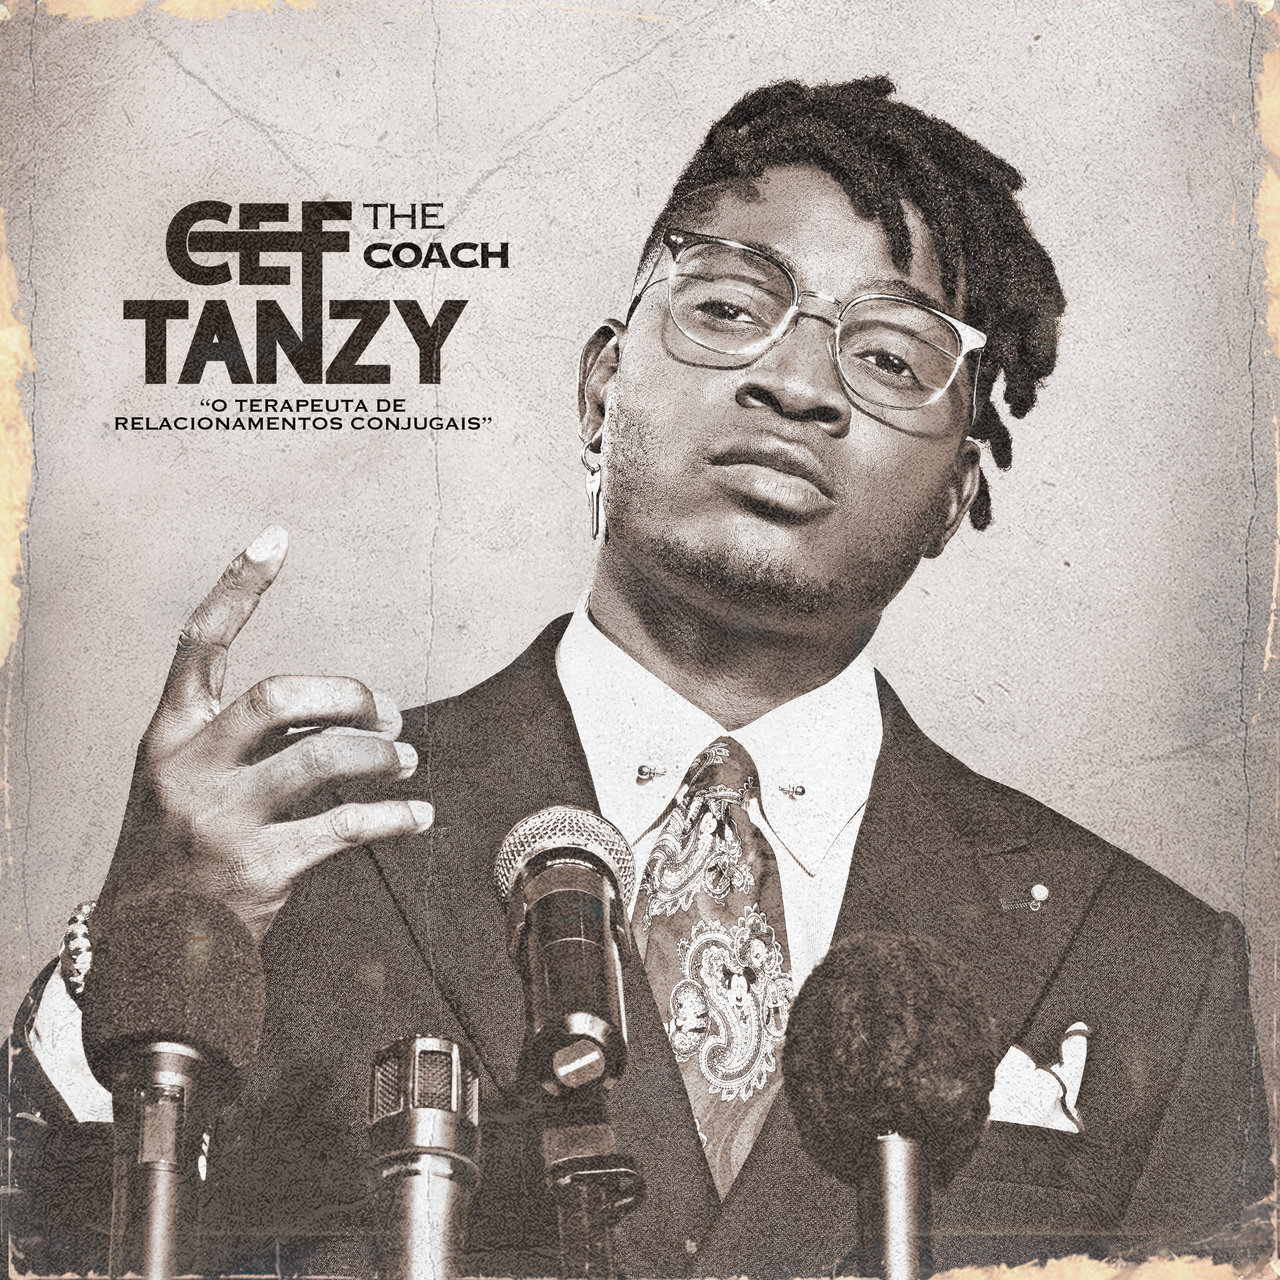 Cef Tanzy - The Coach (Cover)